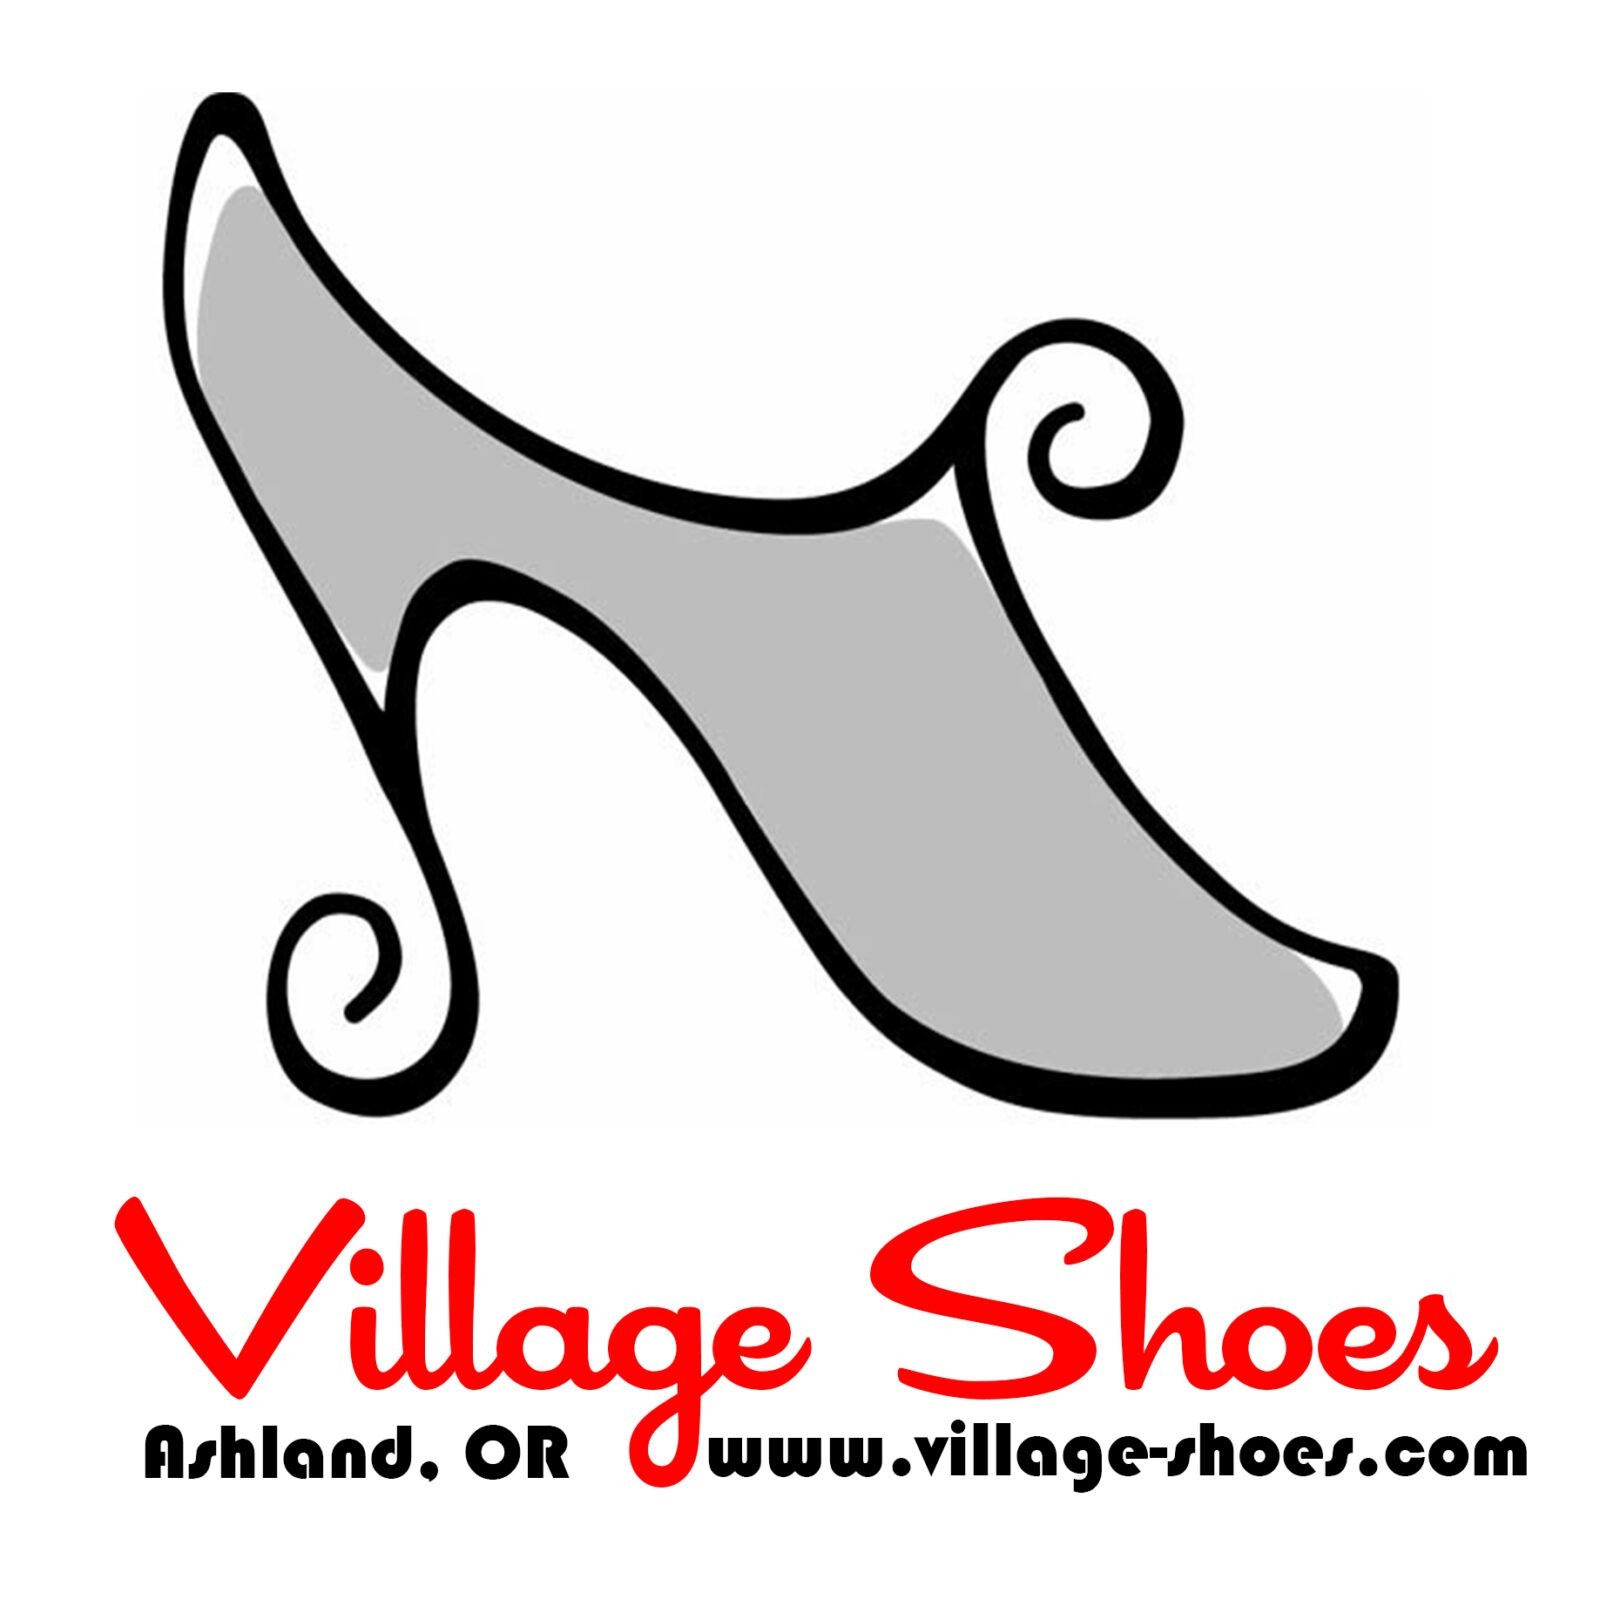 Village Shoes